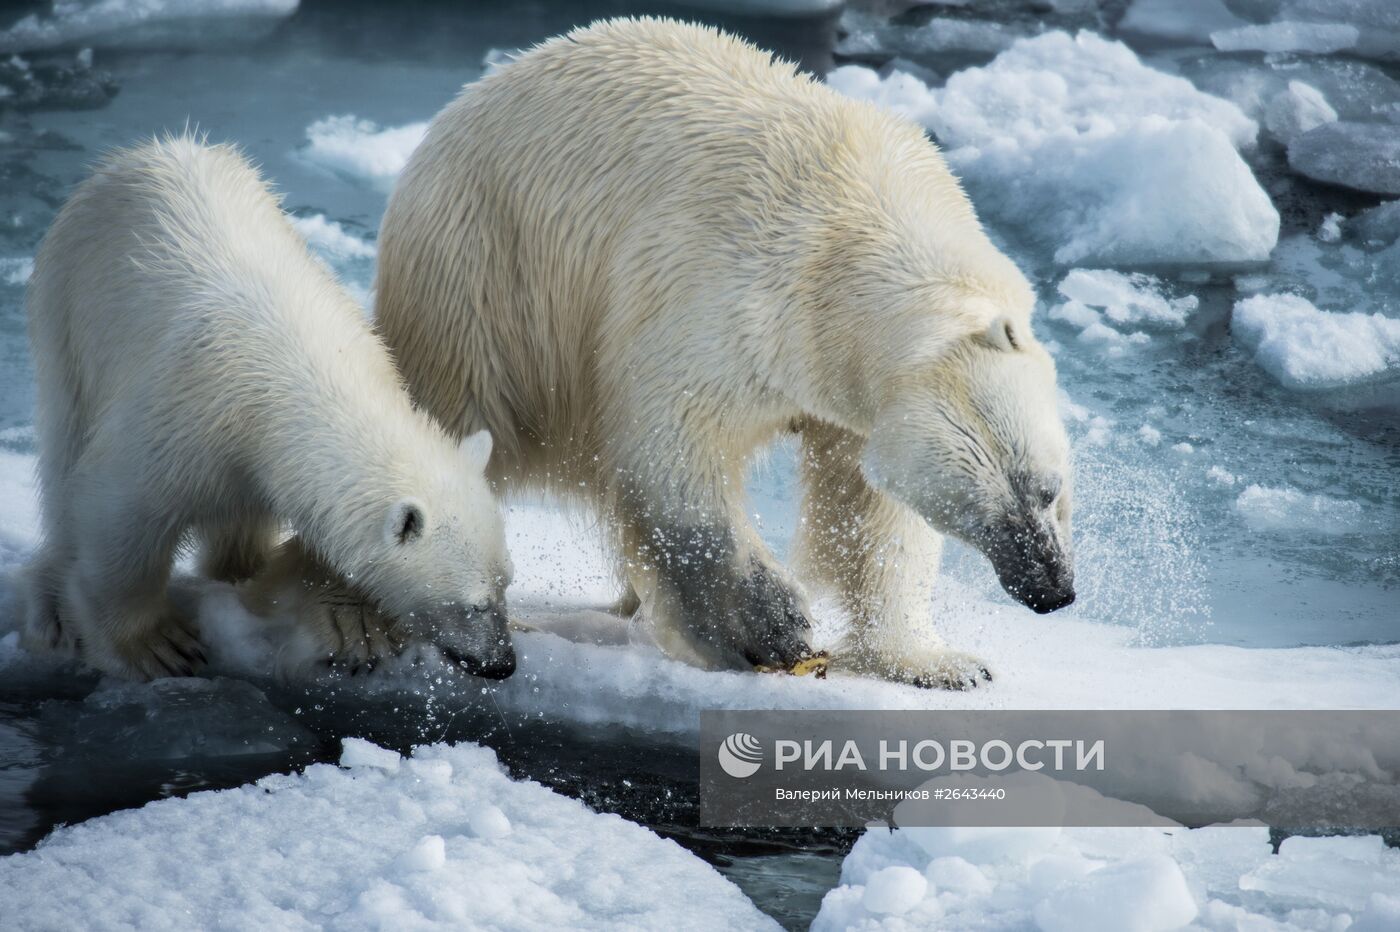 Арктическая экспедиция "Кара-зима 2015"